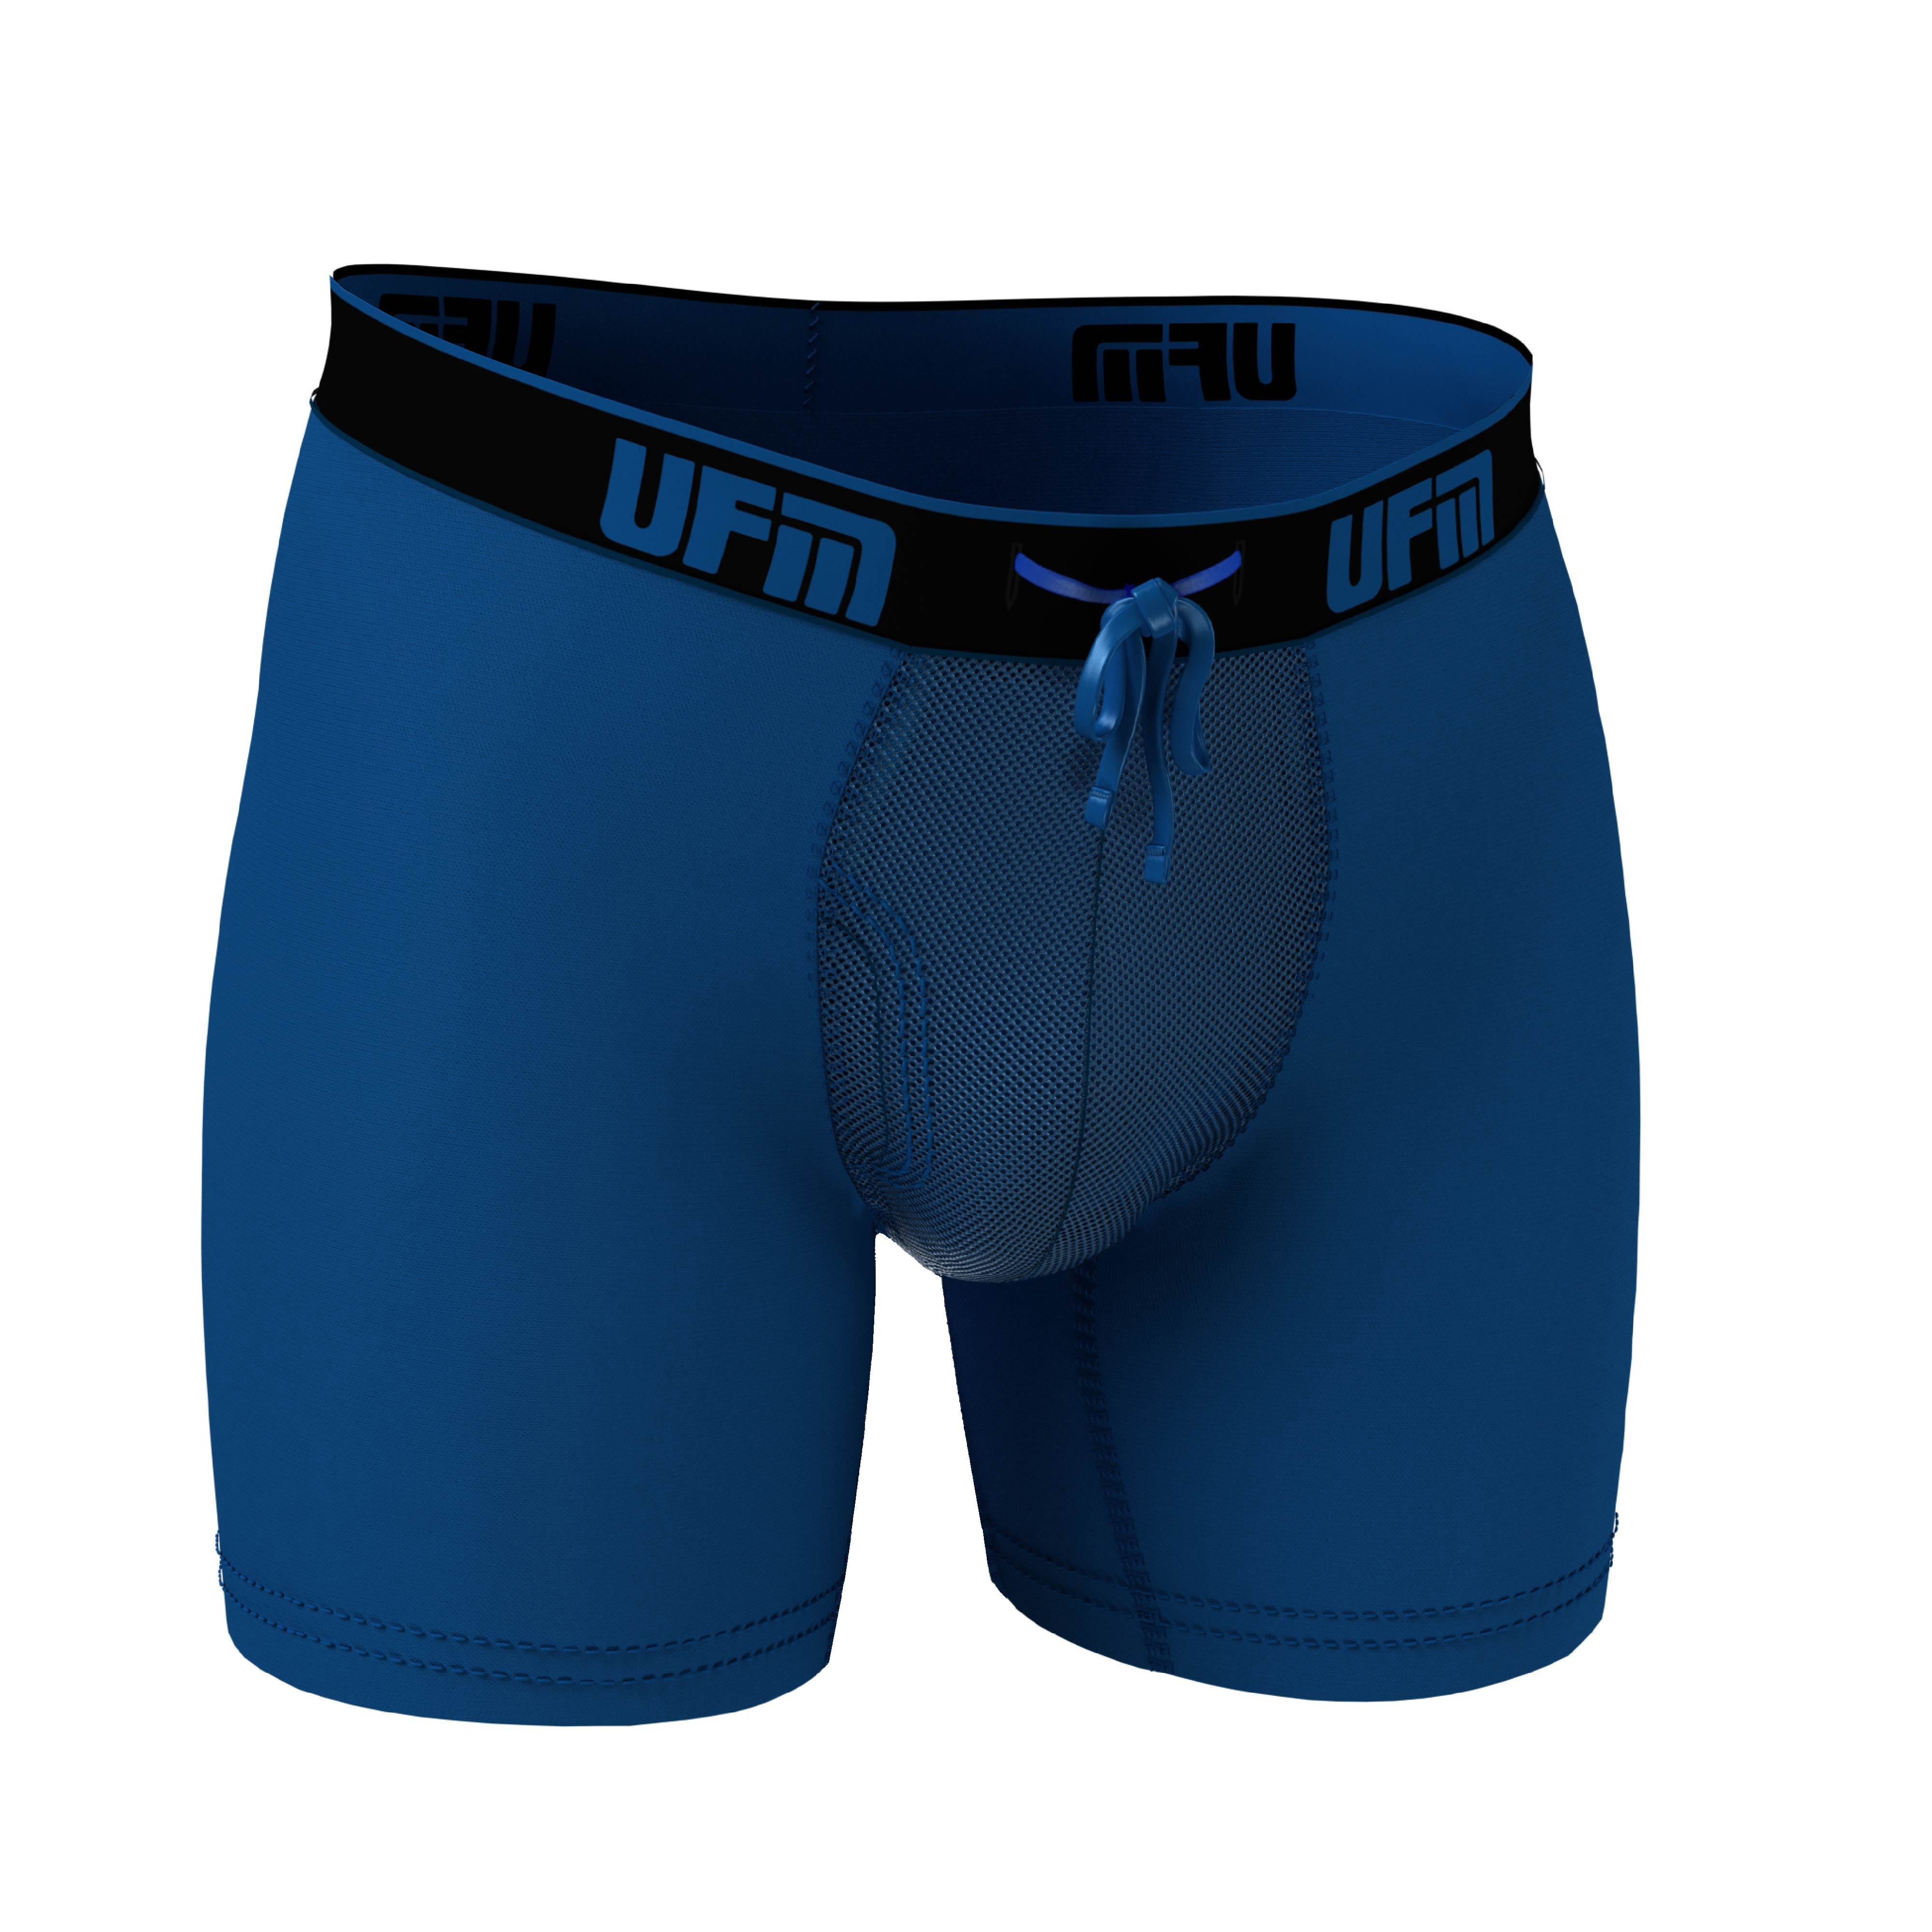 UFM Mens Underwear, 6 Inch Inseam Poly-Spandex Mens Boxer Briefs,  Adjustable REG Support Pouch Mens Boxers, 44-46(2XL) Waist, Black 